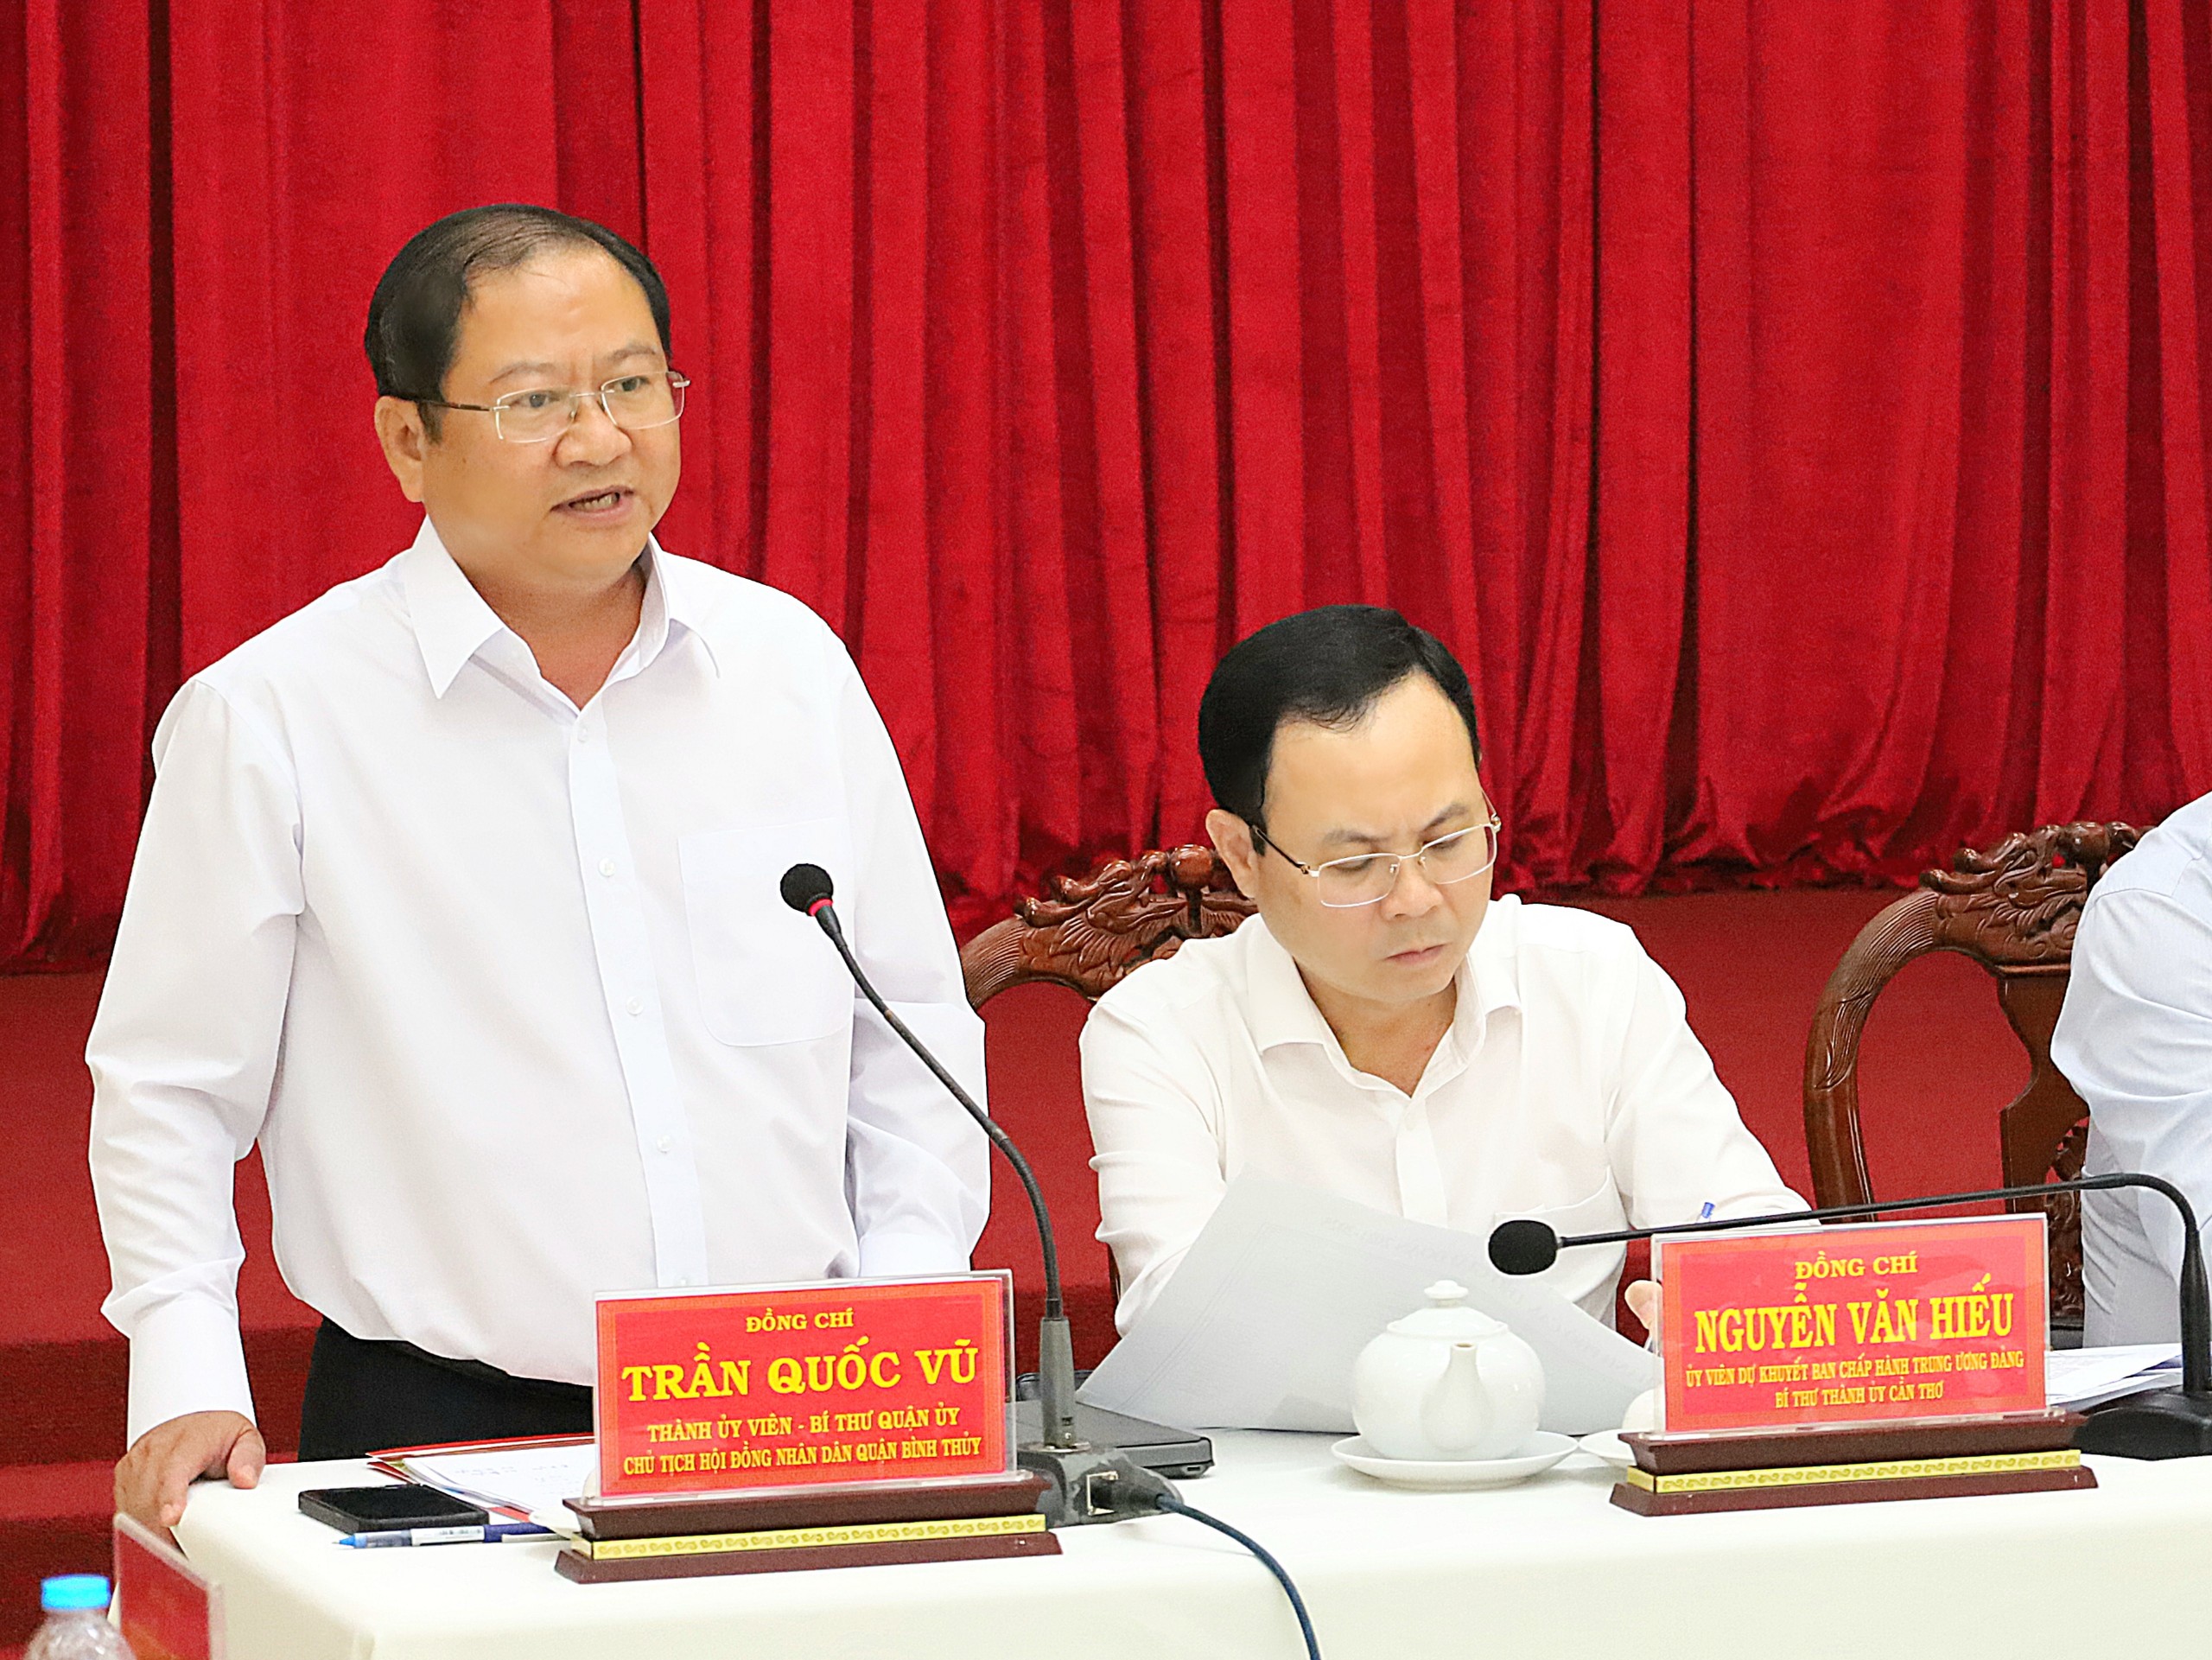 Ông Trần Quốc Vũ – Bí thư Quận ủy Bình Thủy phát biểu tại buổi làm việc.